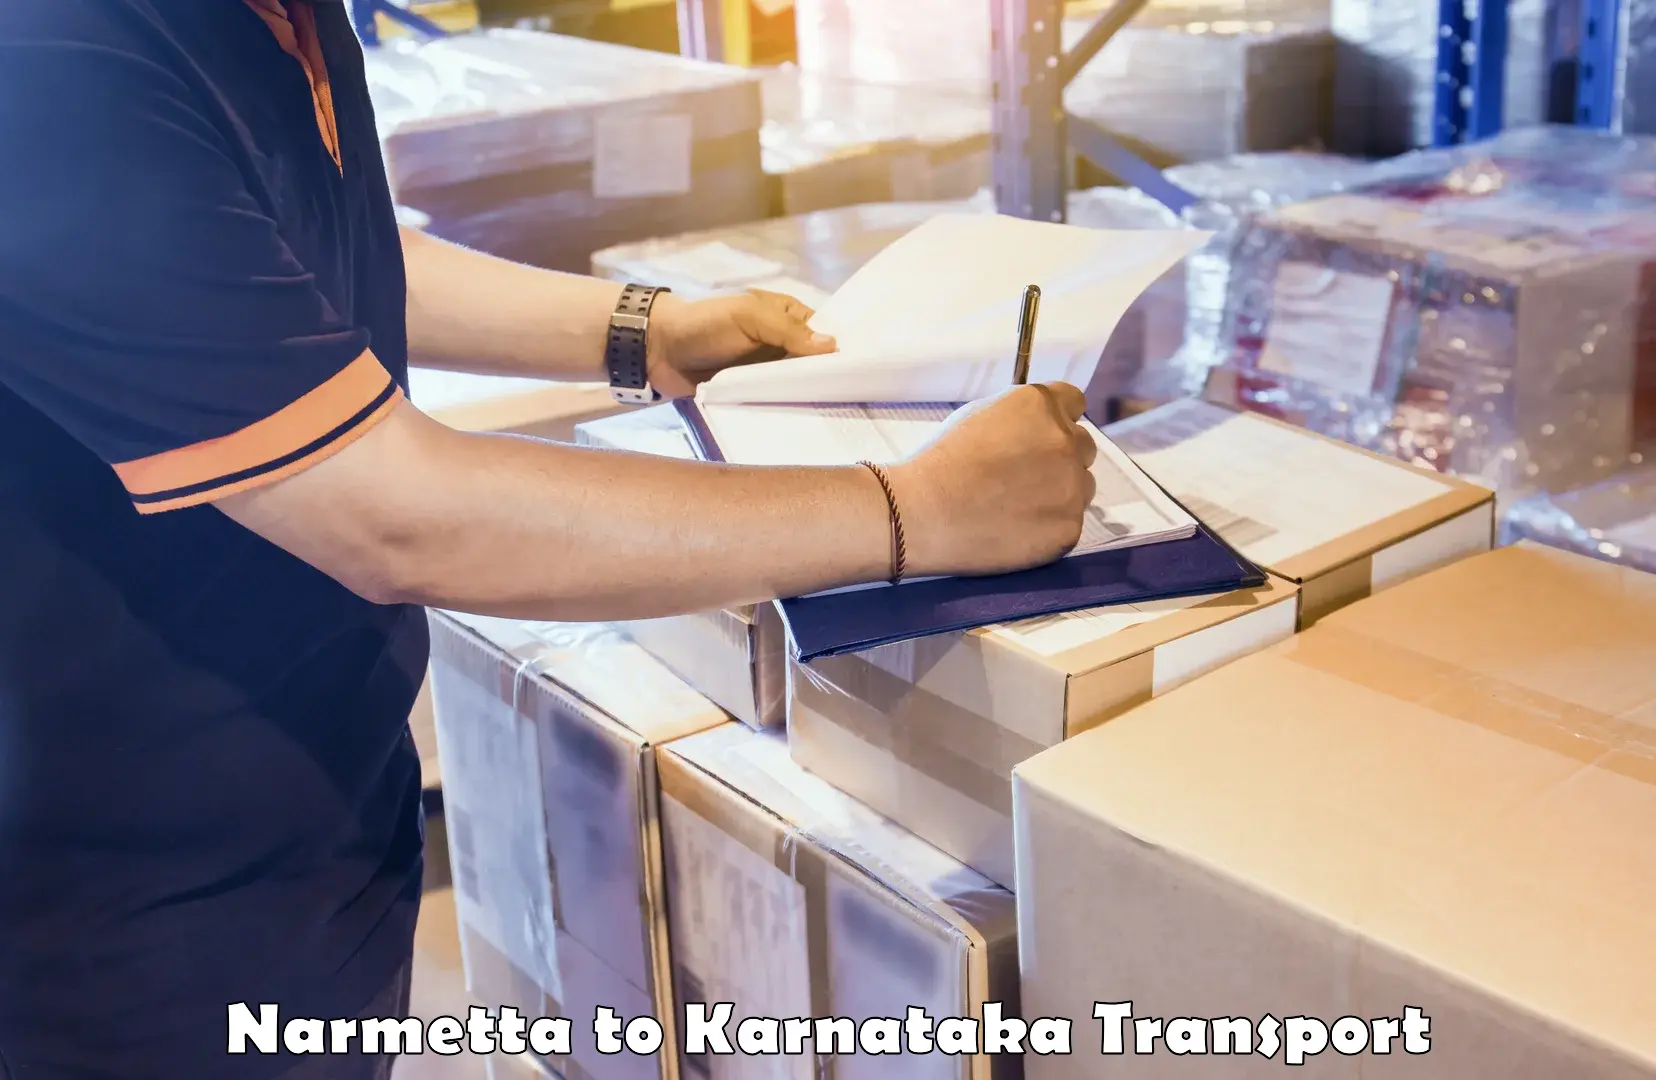 Nearest transport service Narmetta to Krishnarajanagara